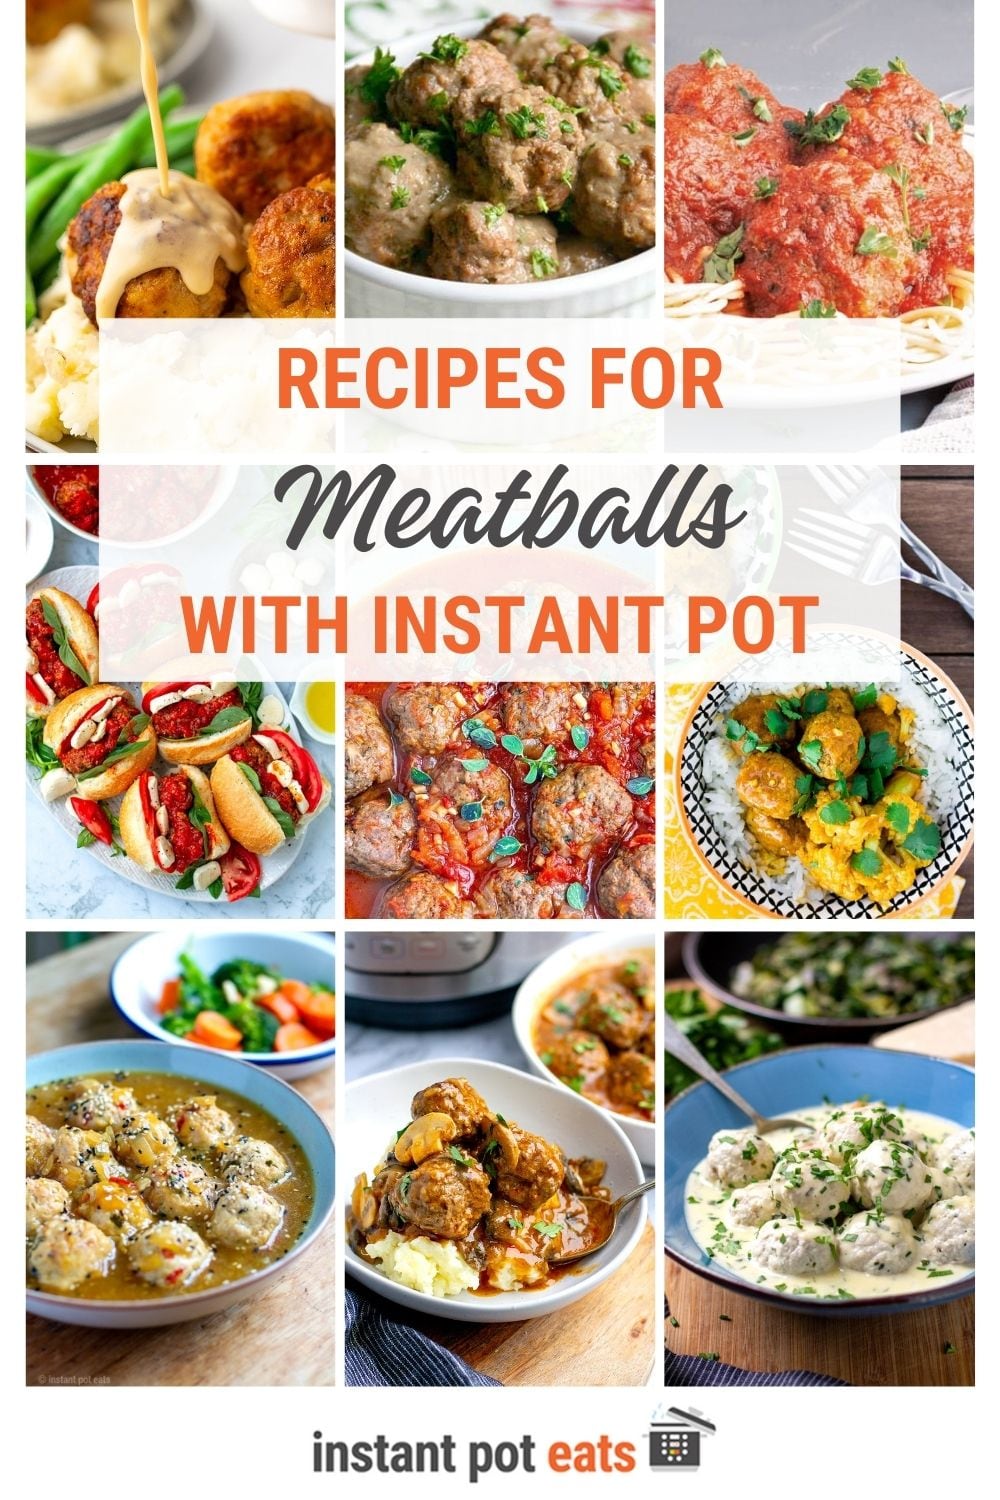 Instant Pot Meatball Recipes